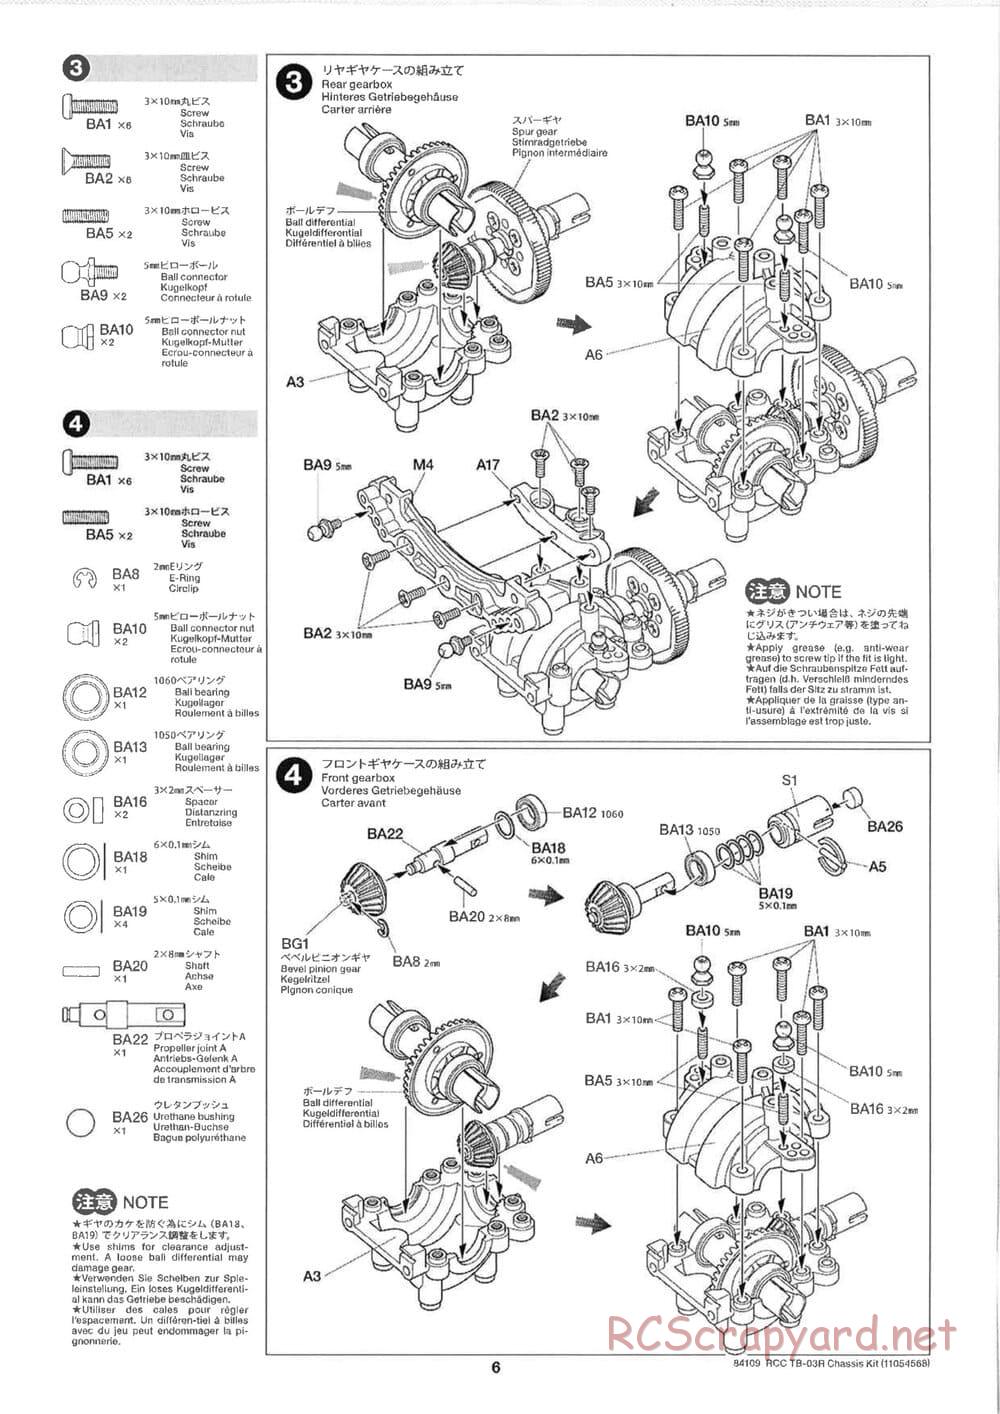 Tamiya - TB-03R Chassis - Manual - Page 6